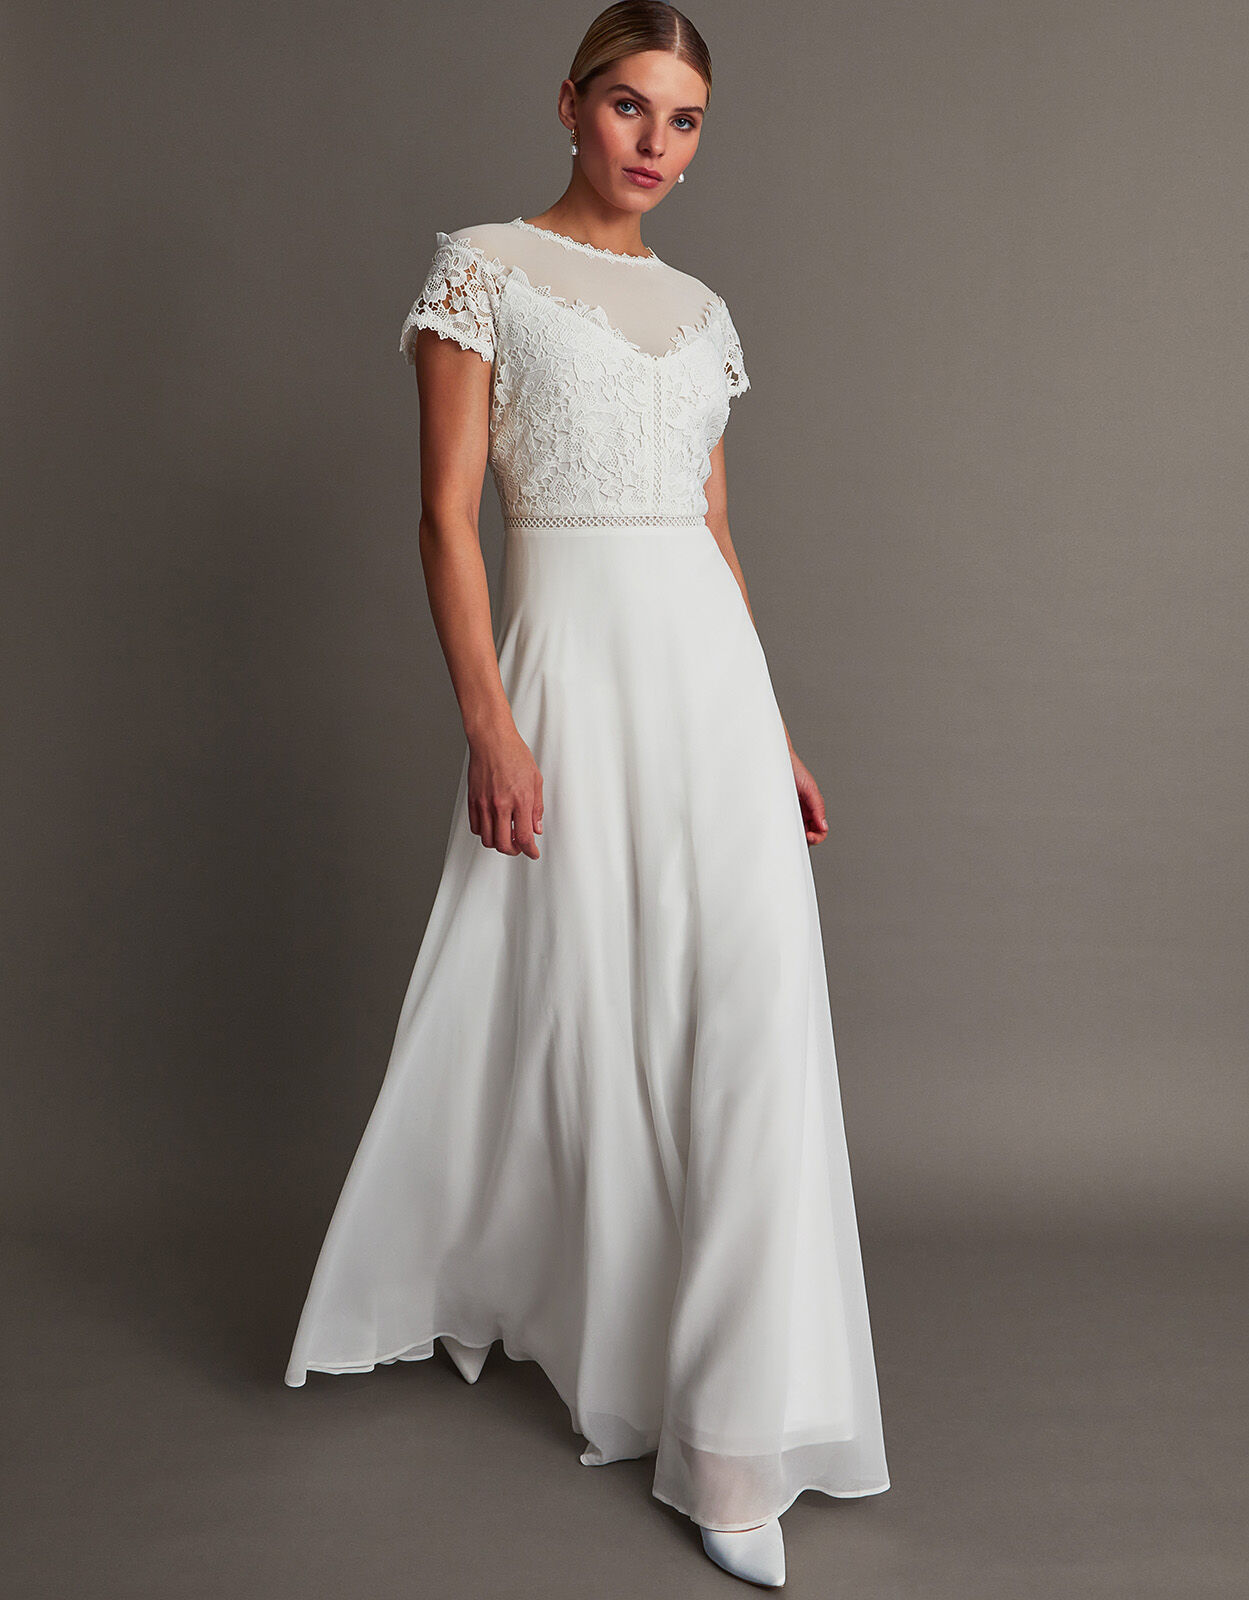 Lace Plus Size Short Wedding Dress Tea Length A Line Bridal Gown 16 18 20  22 24+ | eBay